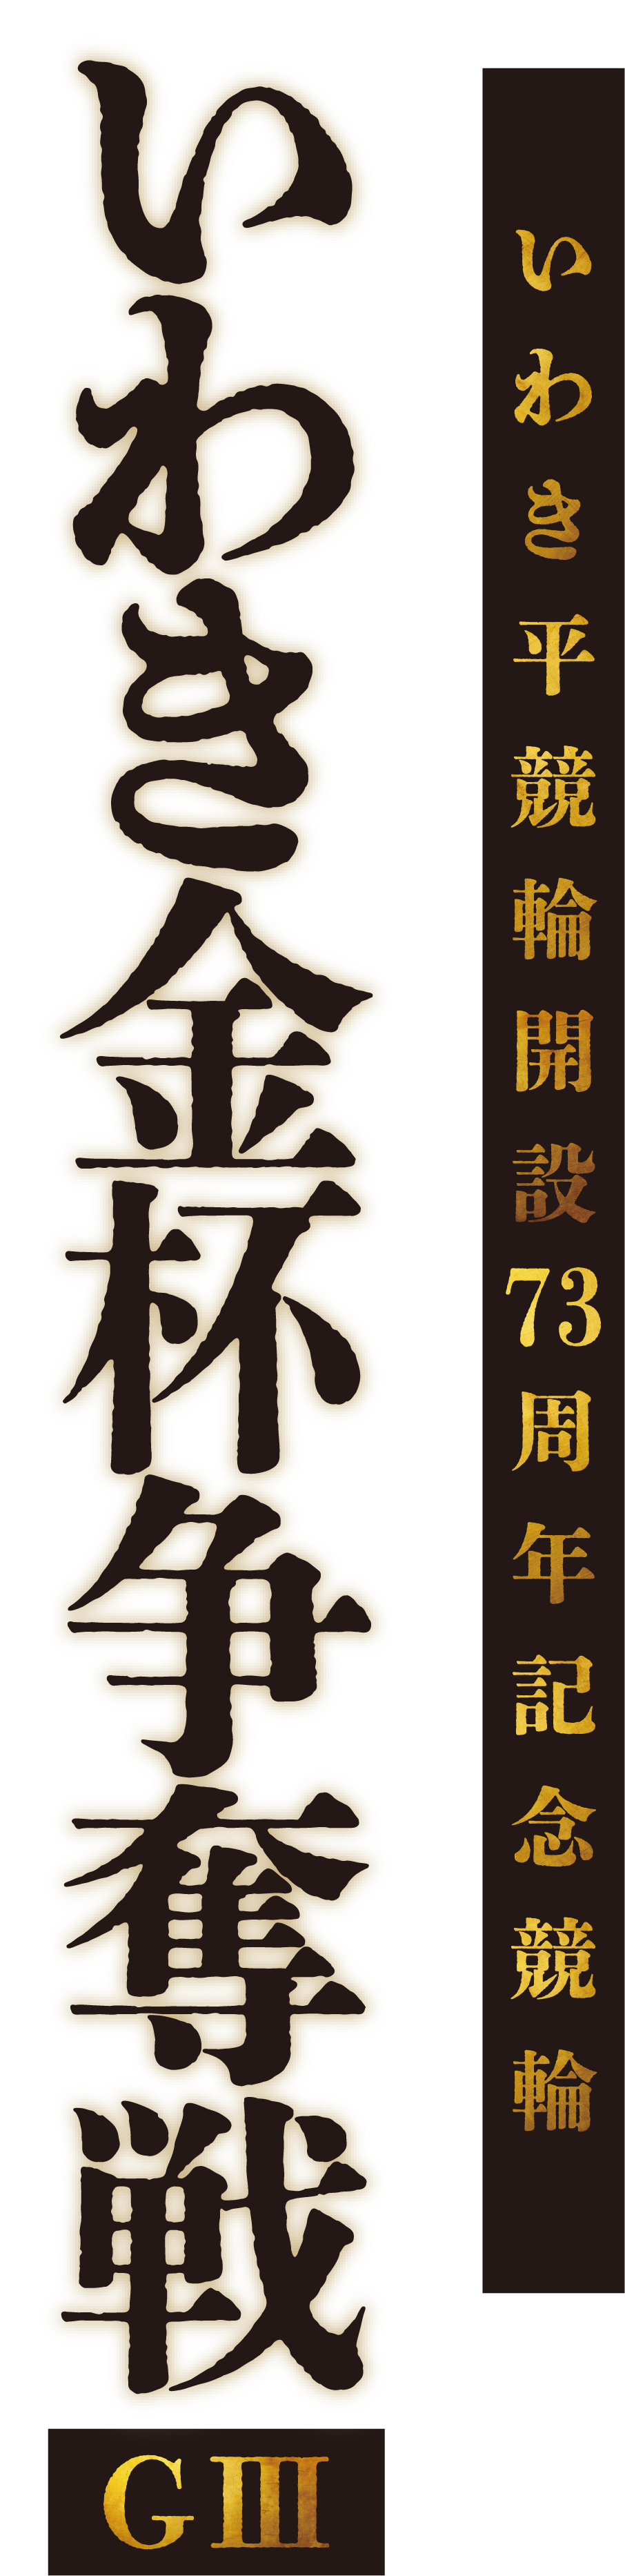 いわき金杯争奪戦 [GIII] - いわき平競輪開設73周年記念競輪